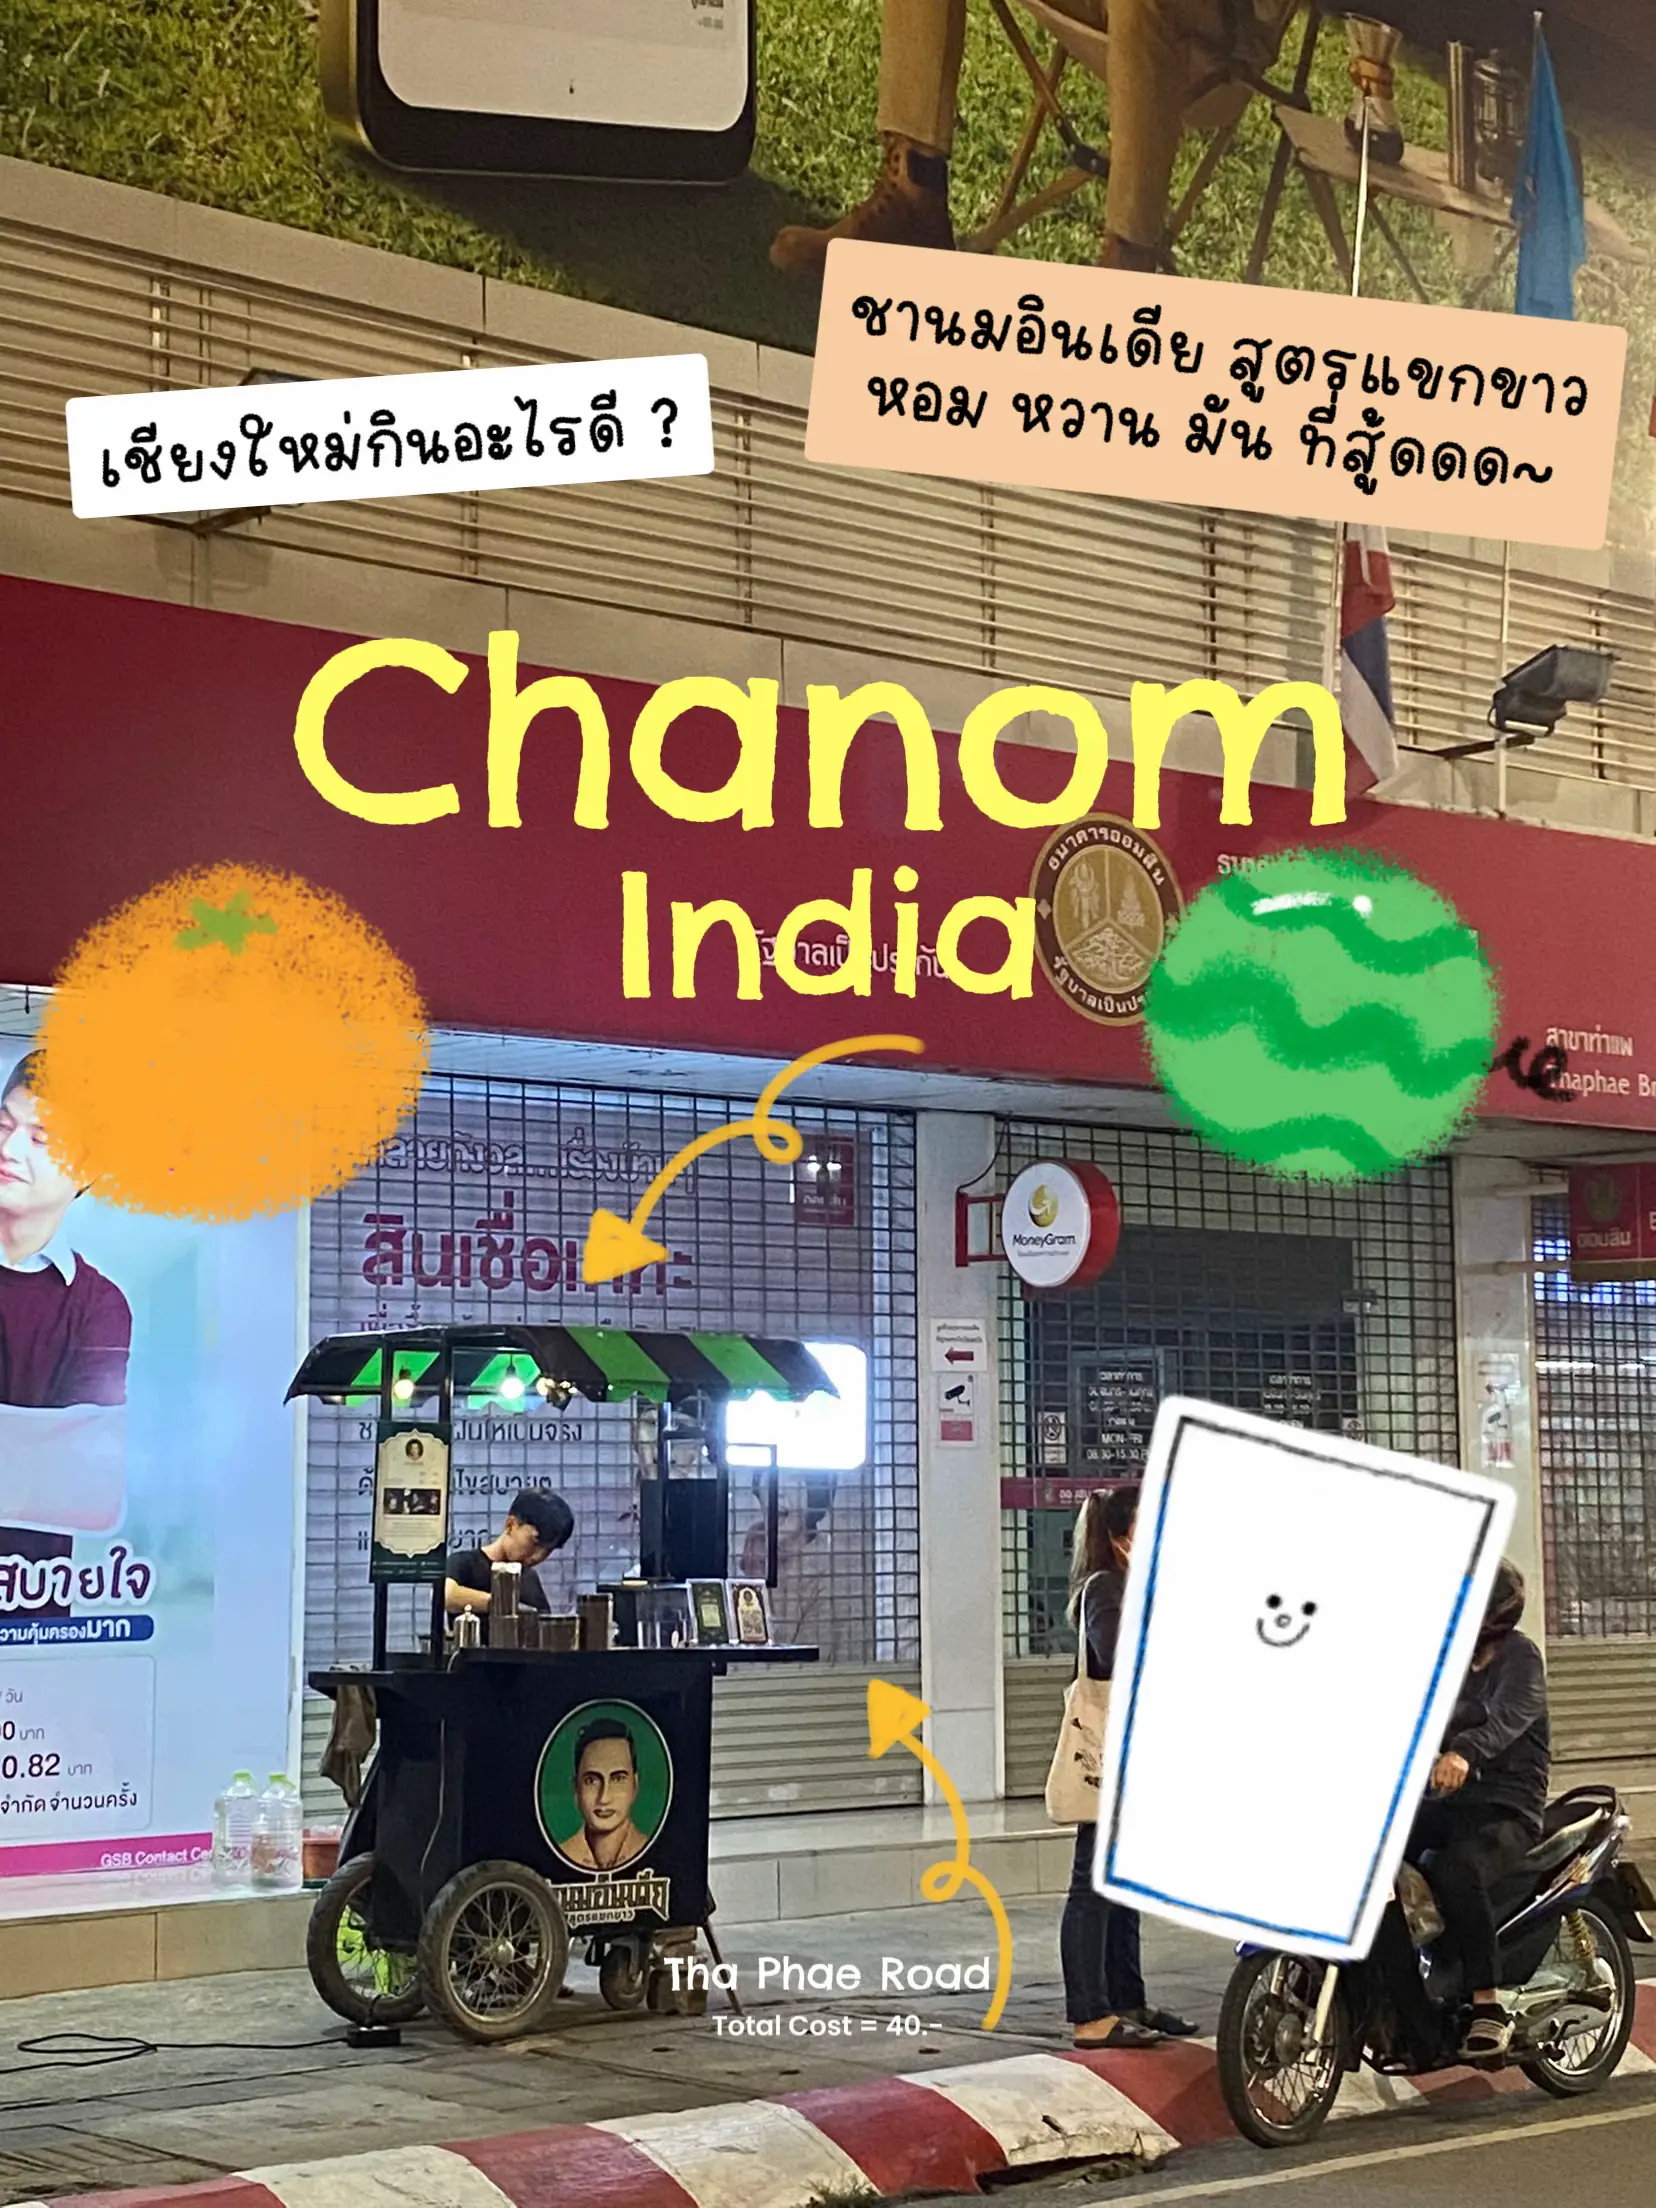 Chanom India 🧋, Galeri diposting oleh chubbygyp